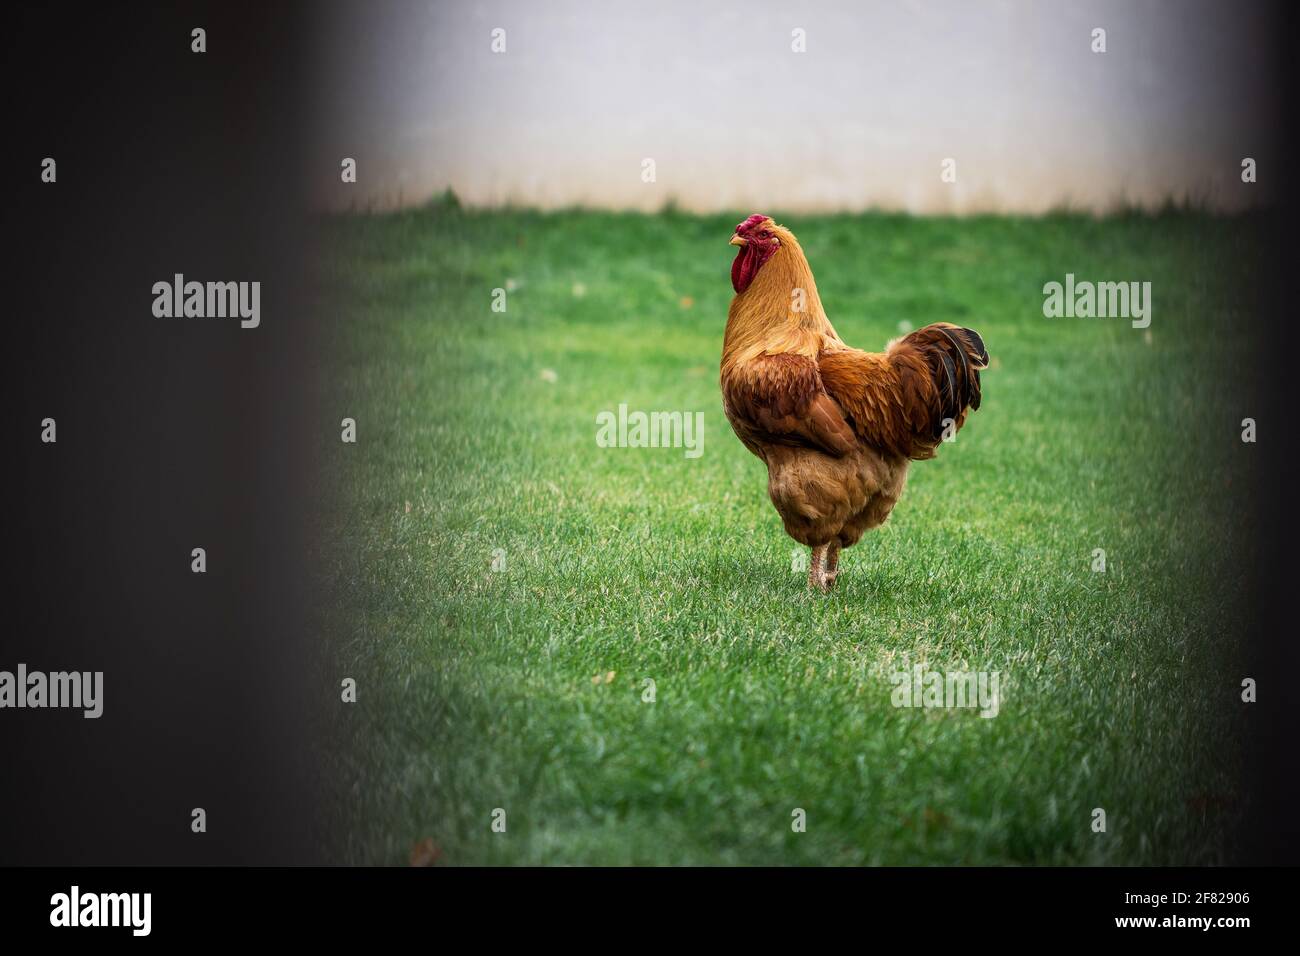 Rooster in giardino dietro recinzione. Pollame a fattoria animale Foto Stock